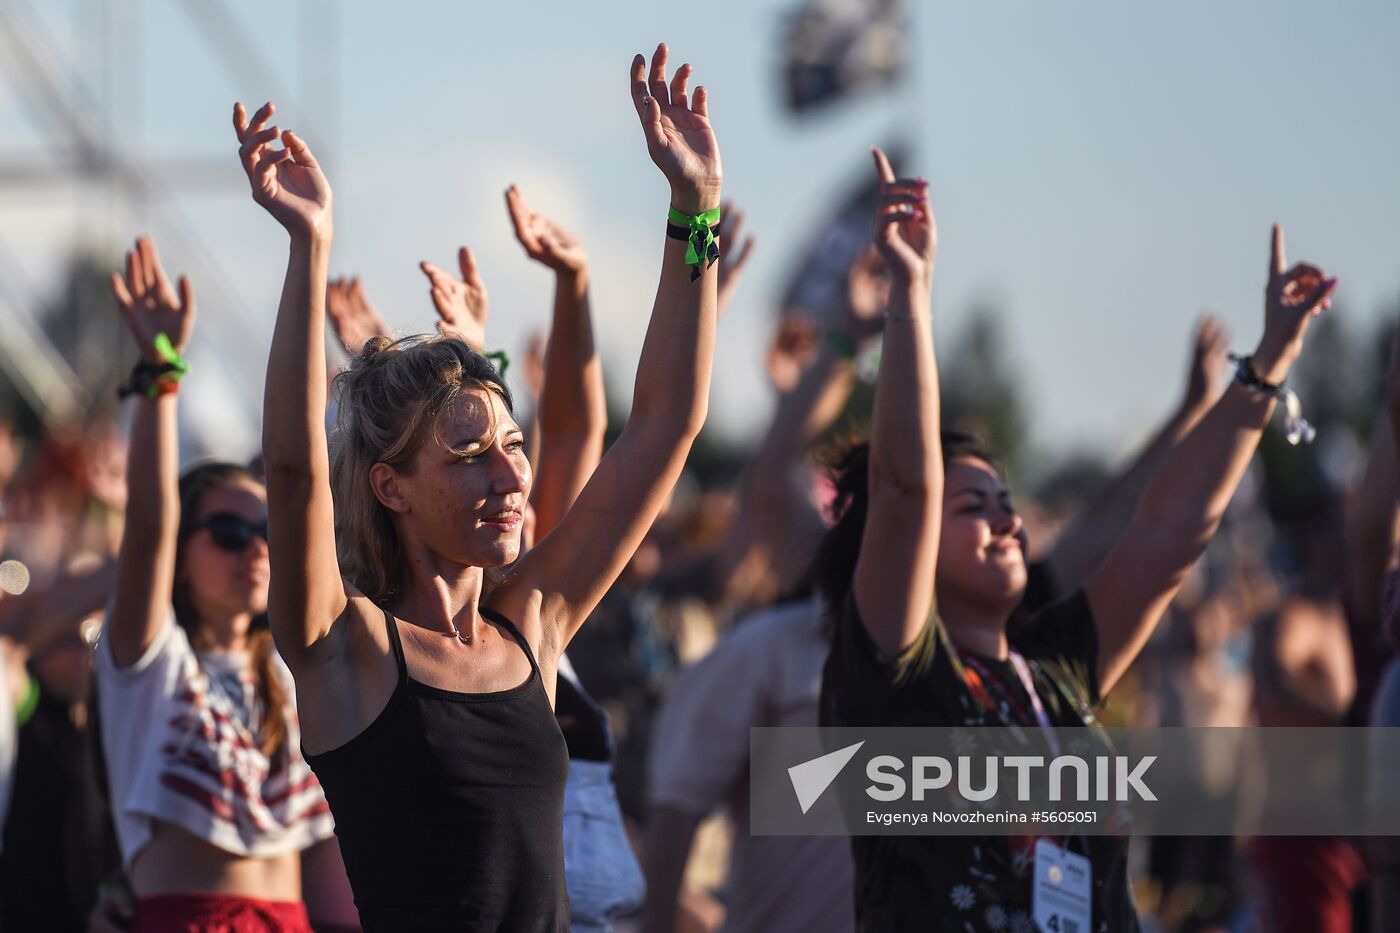 Nashestviye music festival closes in Tver Region